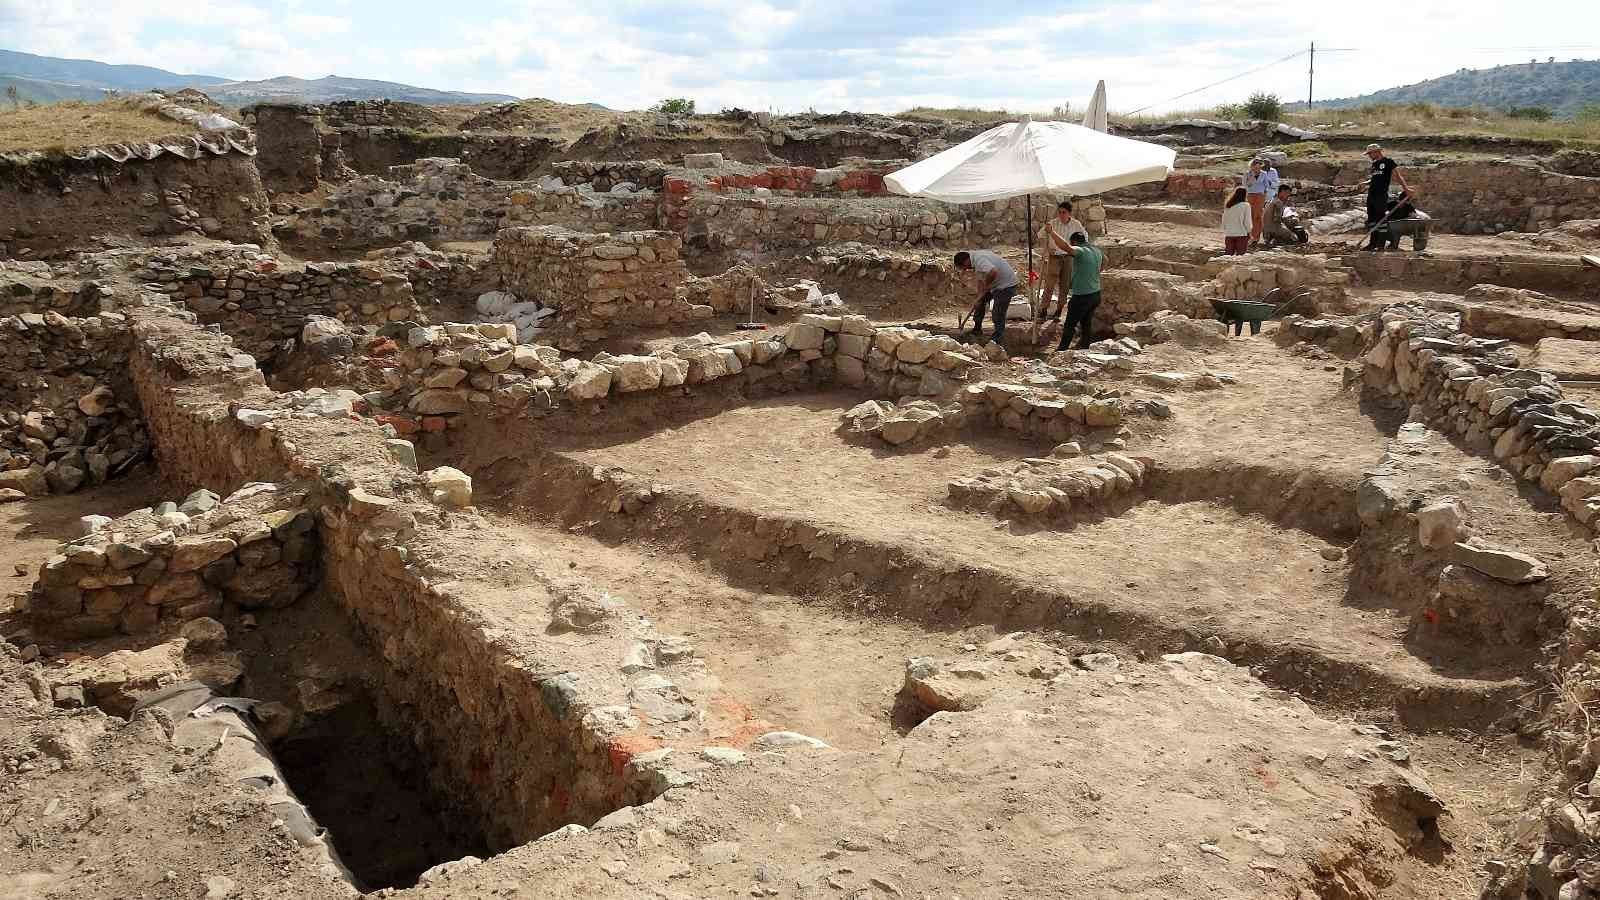 Helenistik döneme ait tapınak gün yüzüne çıkartılıyor
